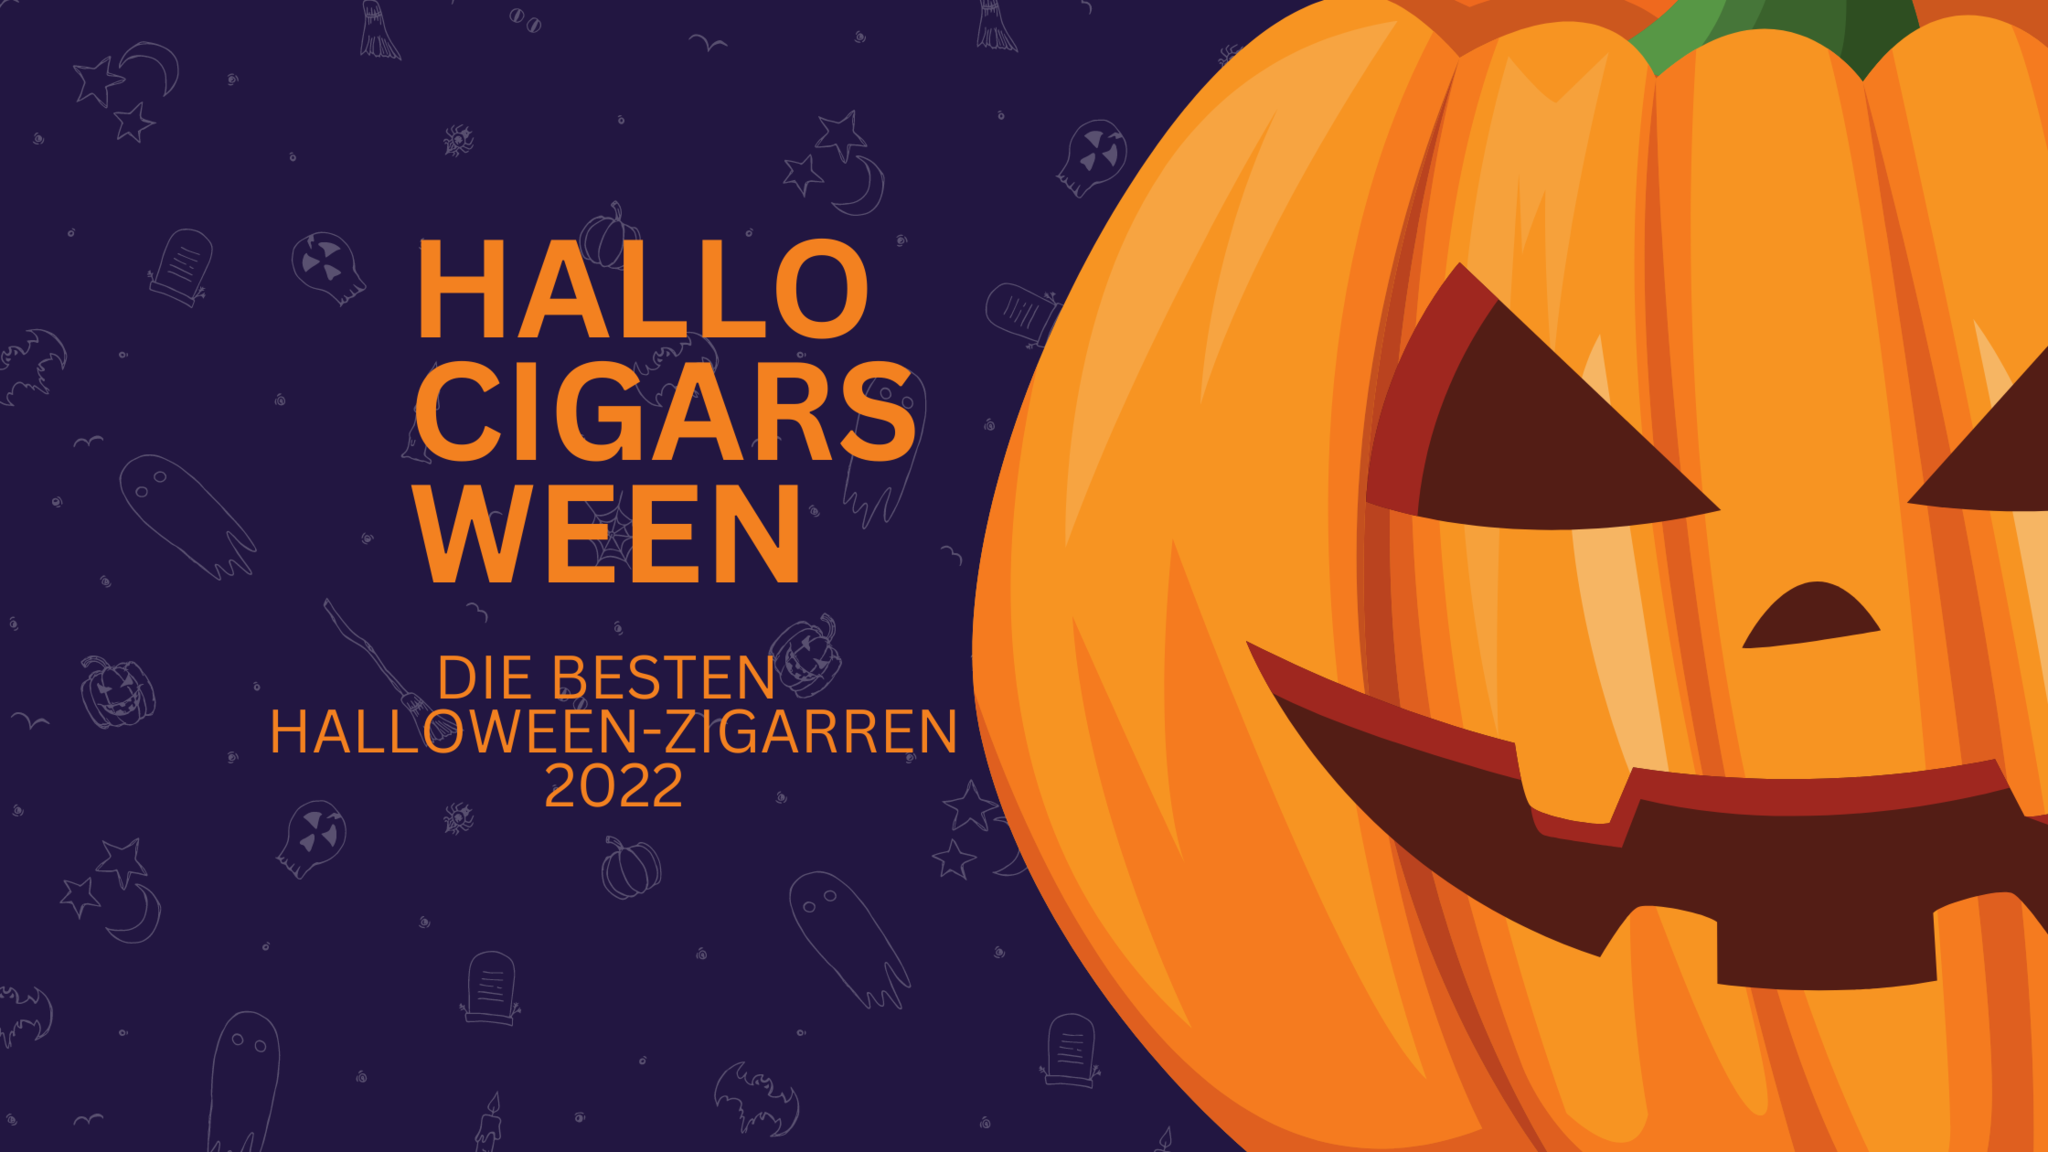 Die besten Halloween-Zigarren 2022